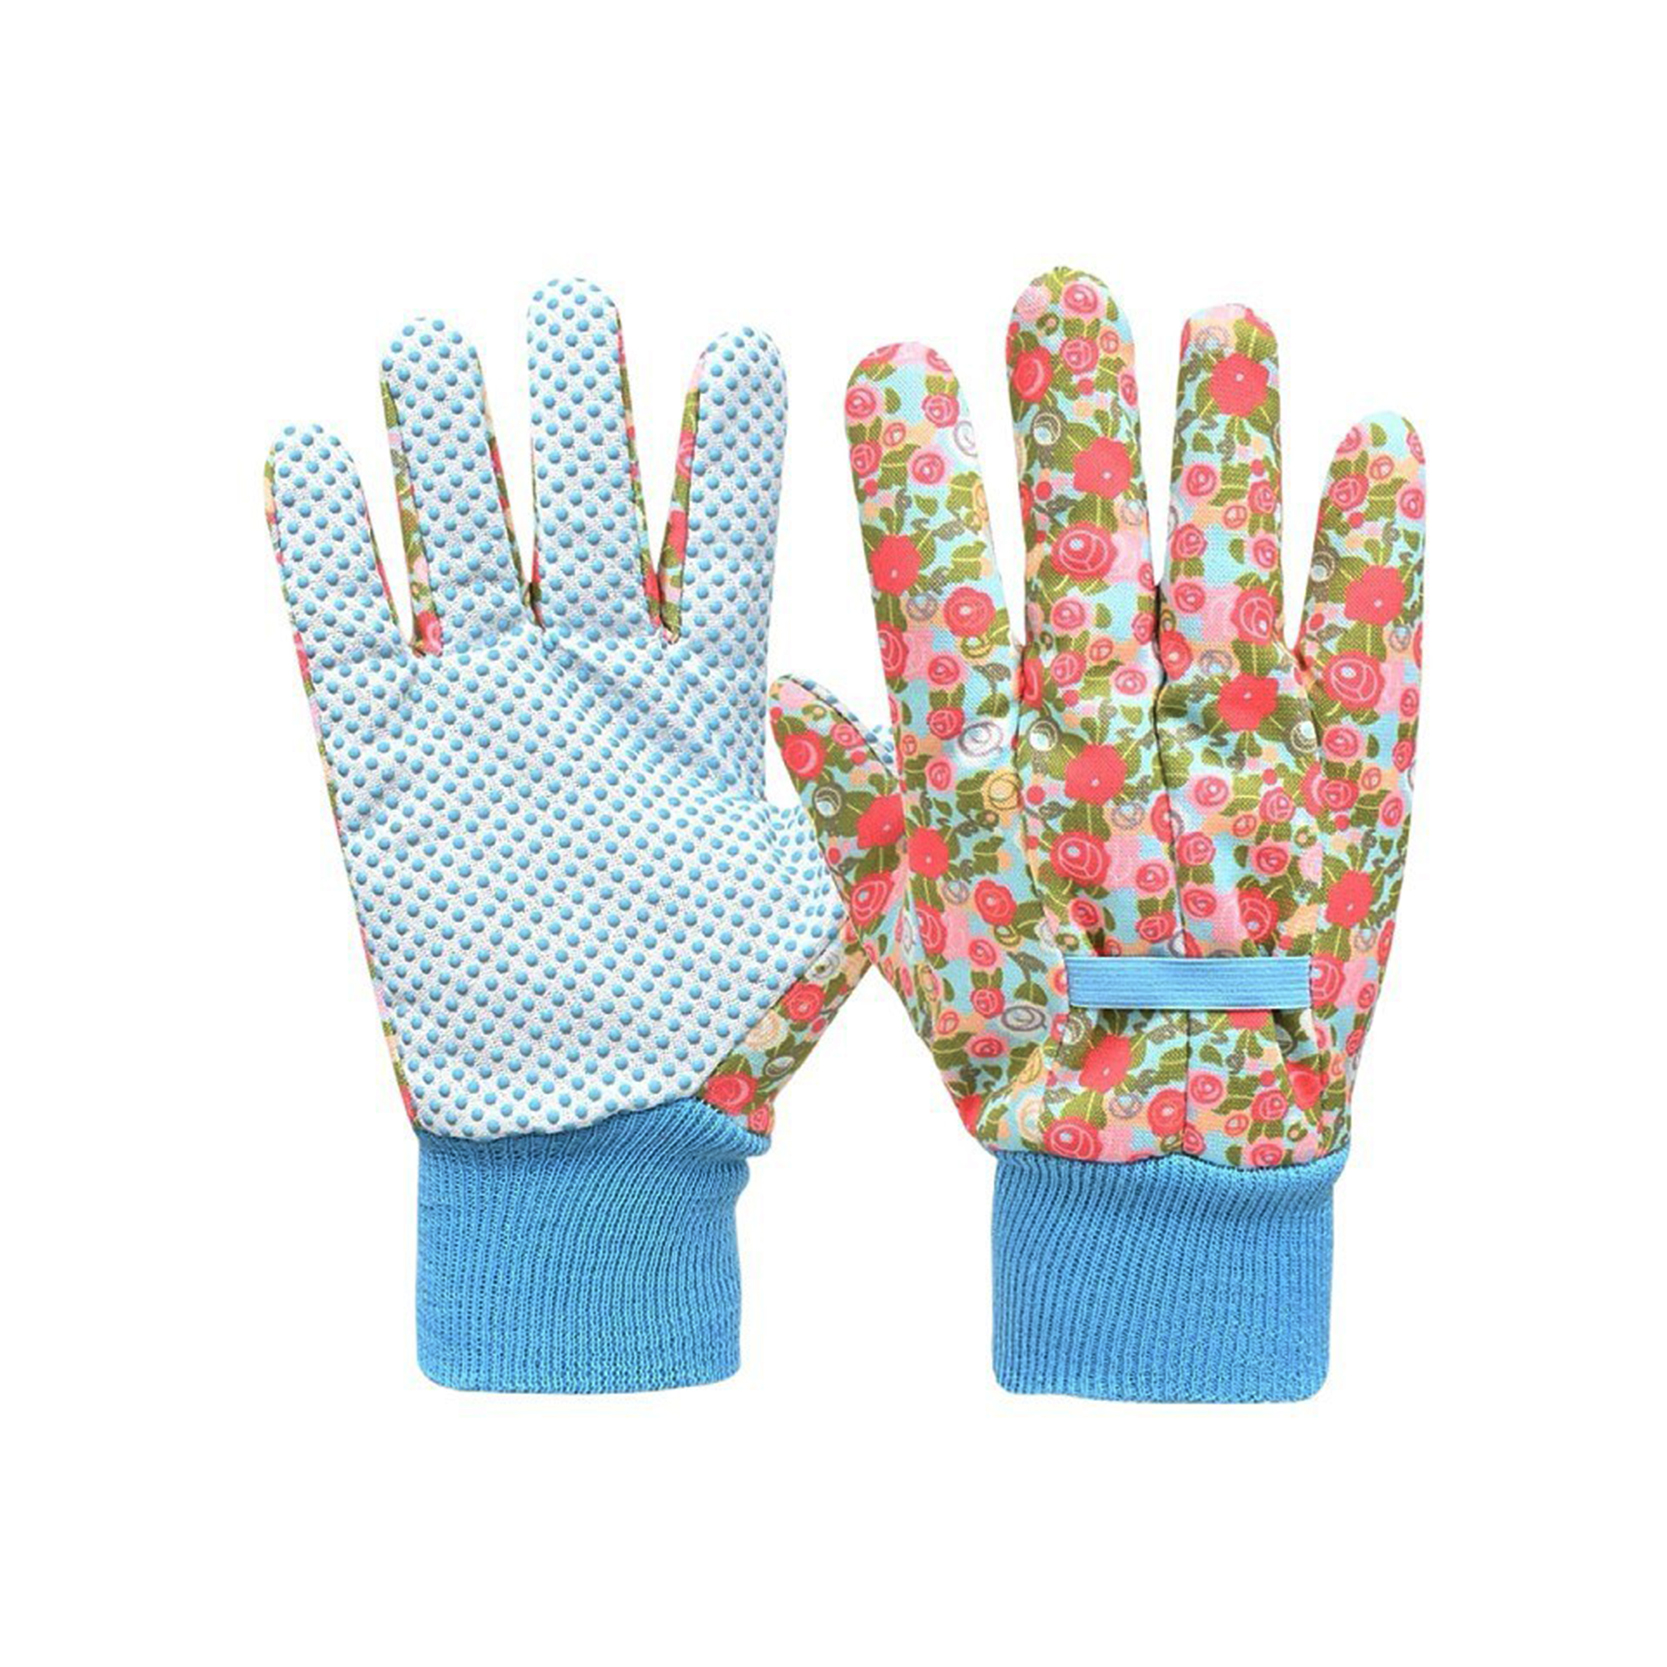 Gloves za Pamba zenye Doti za Pvc Dots Gloves Pvc Glovu za Kazi zenye Doti/guantes De Algodon Con Puntos,Guantes De Trabajo